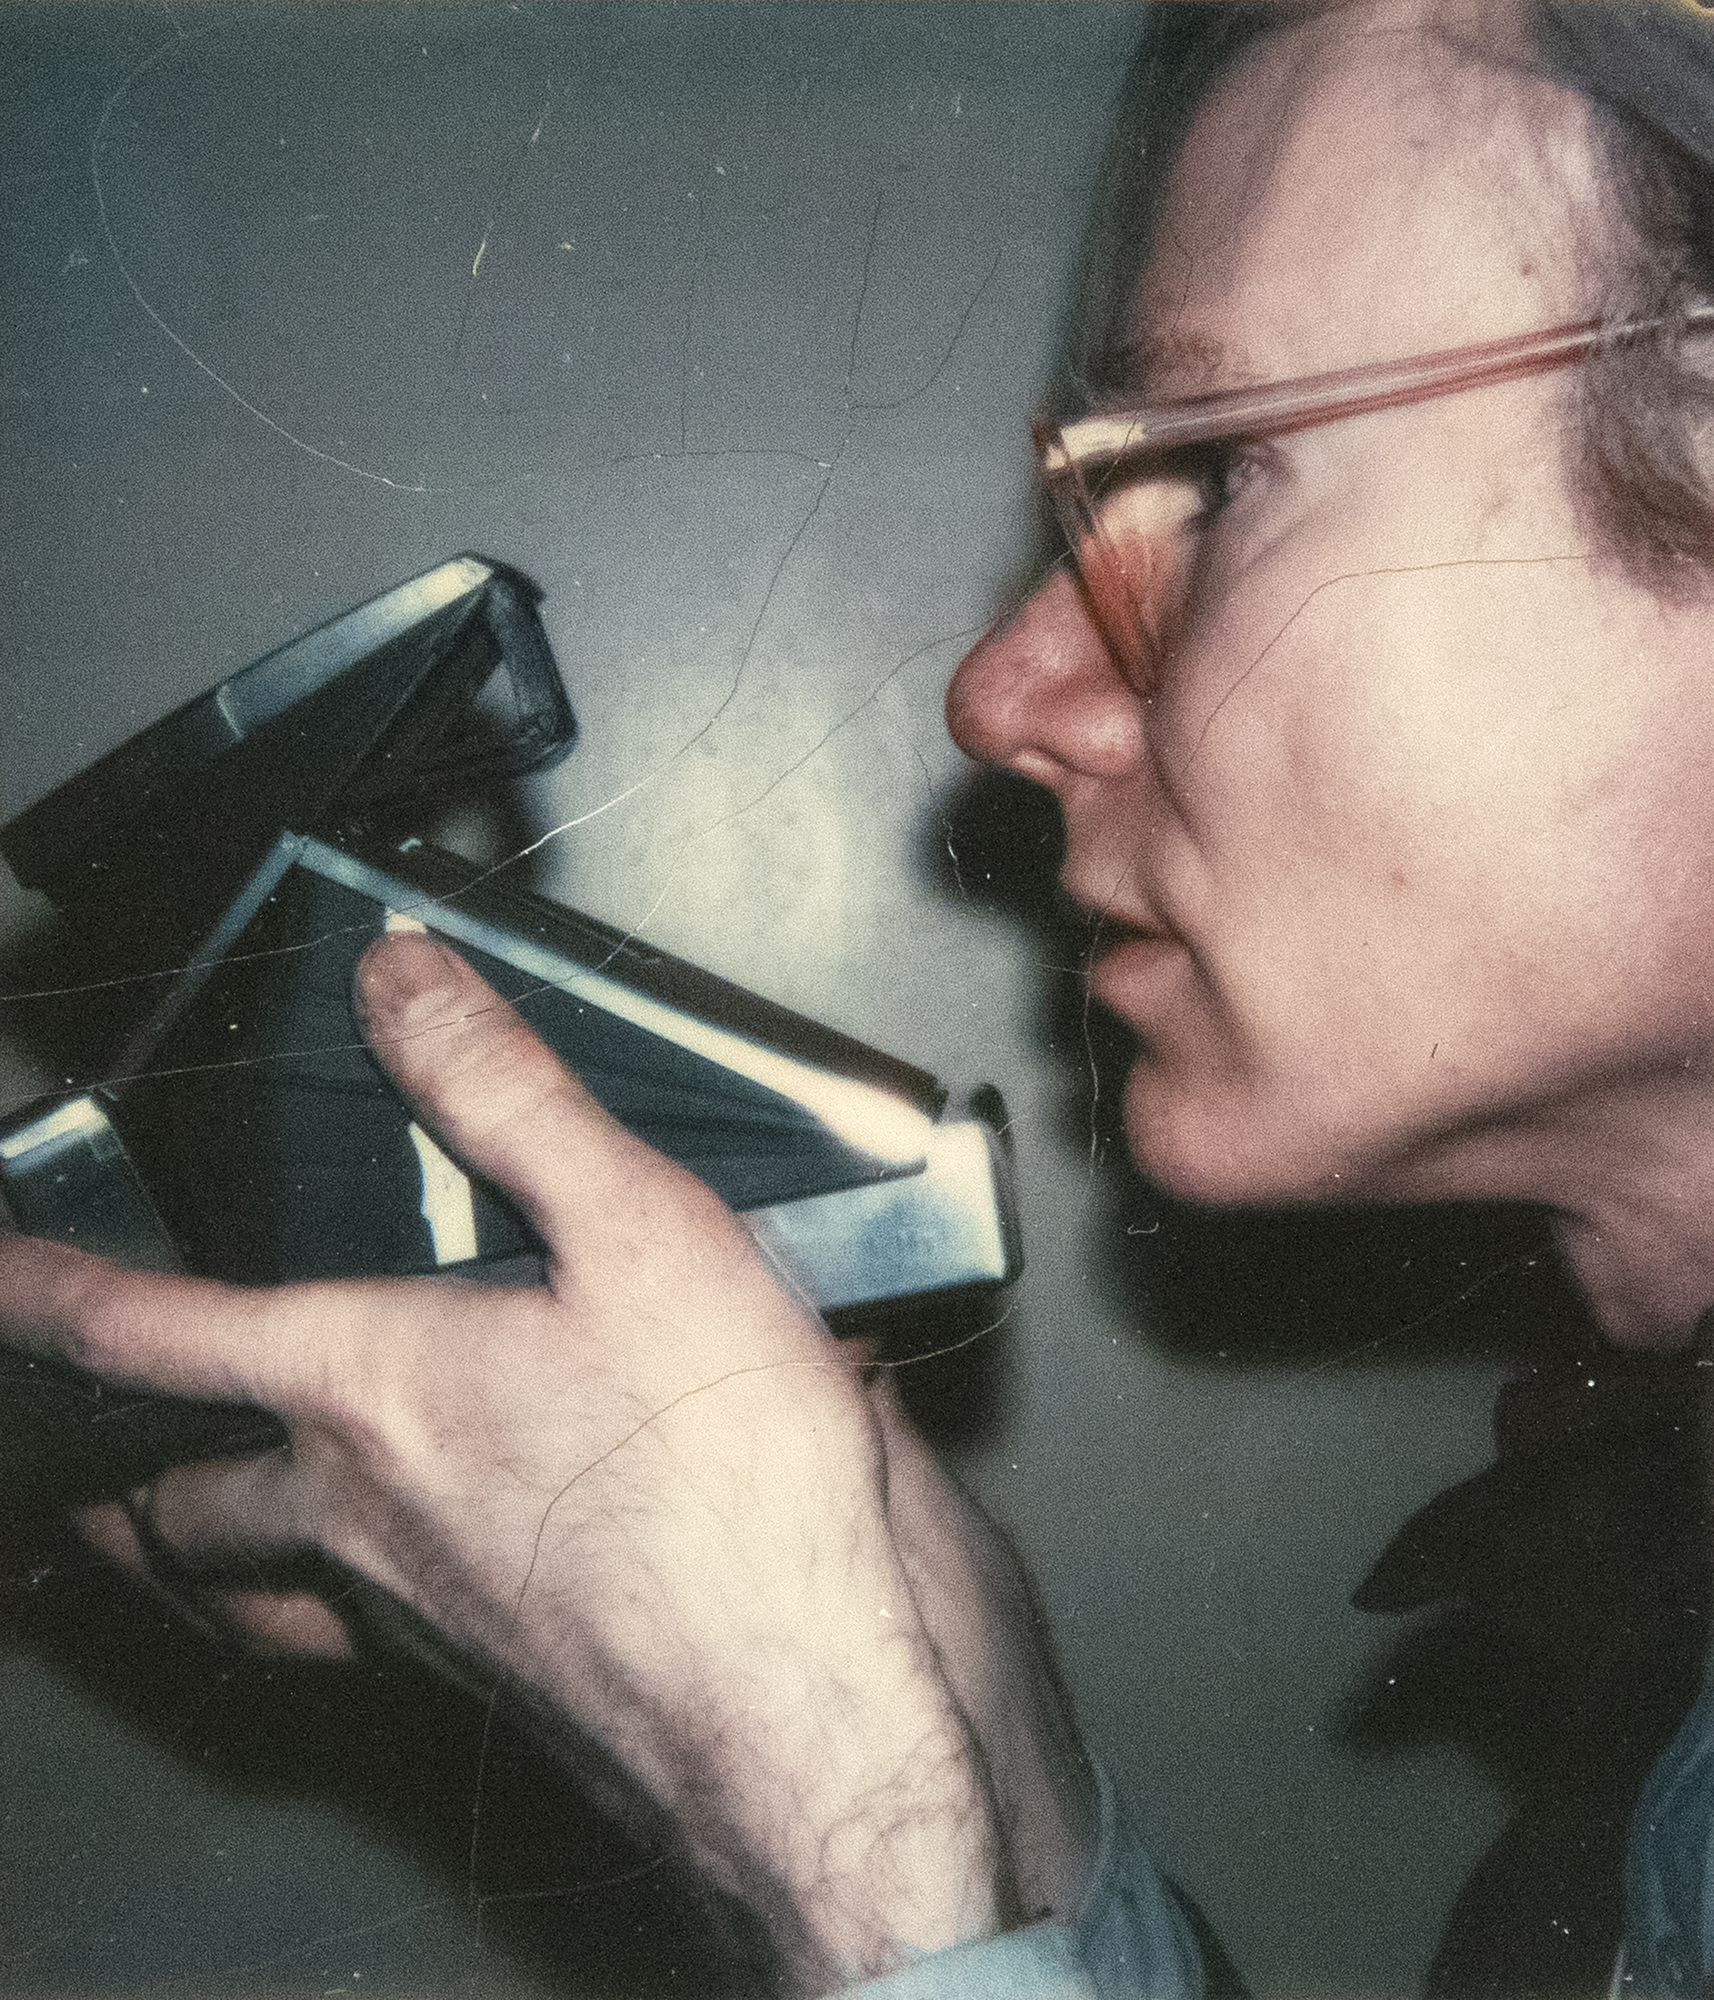 Andy Warhol trug von den späten 1950er Jahren bis zu seinem Tod 1987 eine Polaroid-Kamera als unermüdlicher Chronist des Lebens und seiner Begegnungen mit sich. Die riesige Sammlung von Polaroids, die er anhäufte, ist spontan, ungeschliffen, oft roh und dient als Chronik seiner Zeit, ähnlich wie Instagram unsere heutige Zeit widerspiegelt. Dieses Selbstporträt könnte auch von einer anderen Person aufgenommen worden sein, die den Betrachter auffordert, es als Selbstporträt zu akzeptieren, oder es wurde von Warhol mit einem externen Selbstauslöser aufgenommen. Es ist ein Porträt, das das Gerät feiert, um das sich Warhols Leben im Wesentlichen drehte, eine sorgfältig inszenierte Hommage an seine Beziehung zur Polaroidkamera.